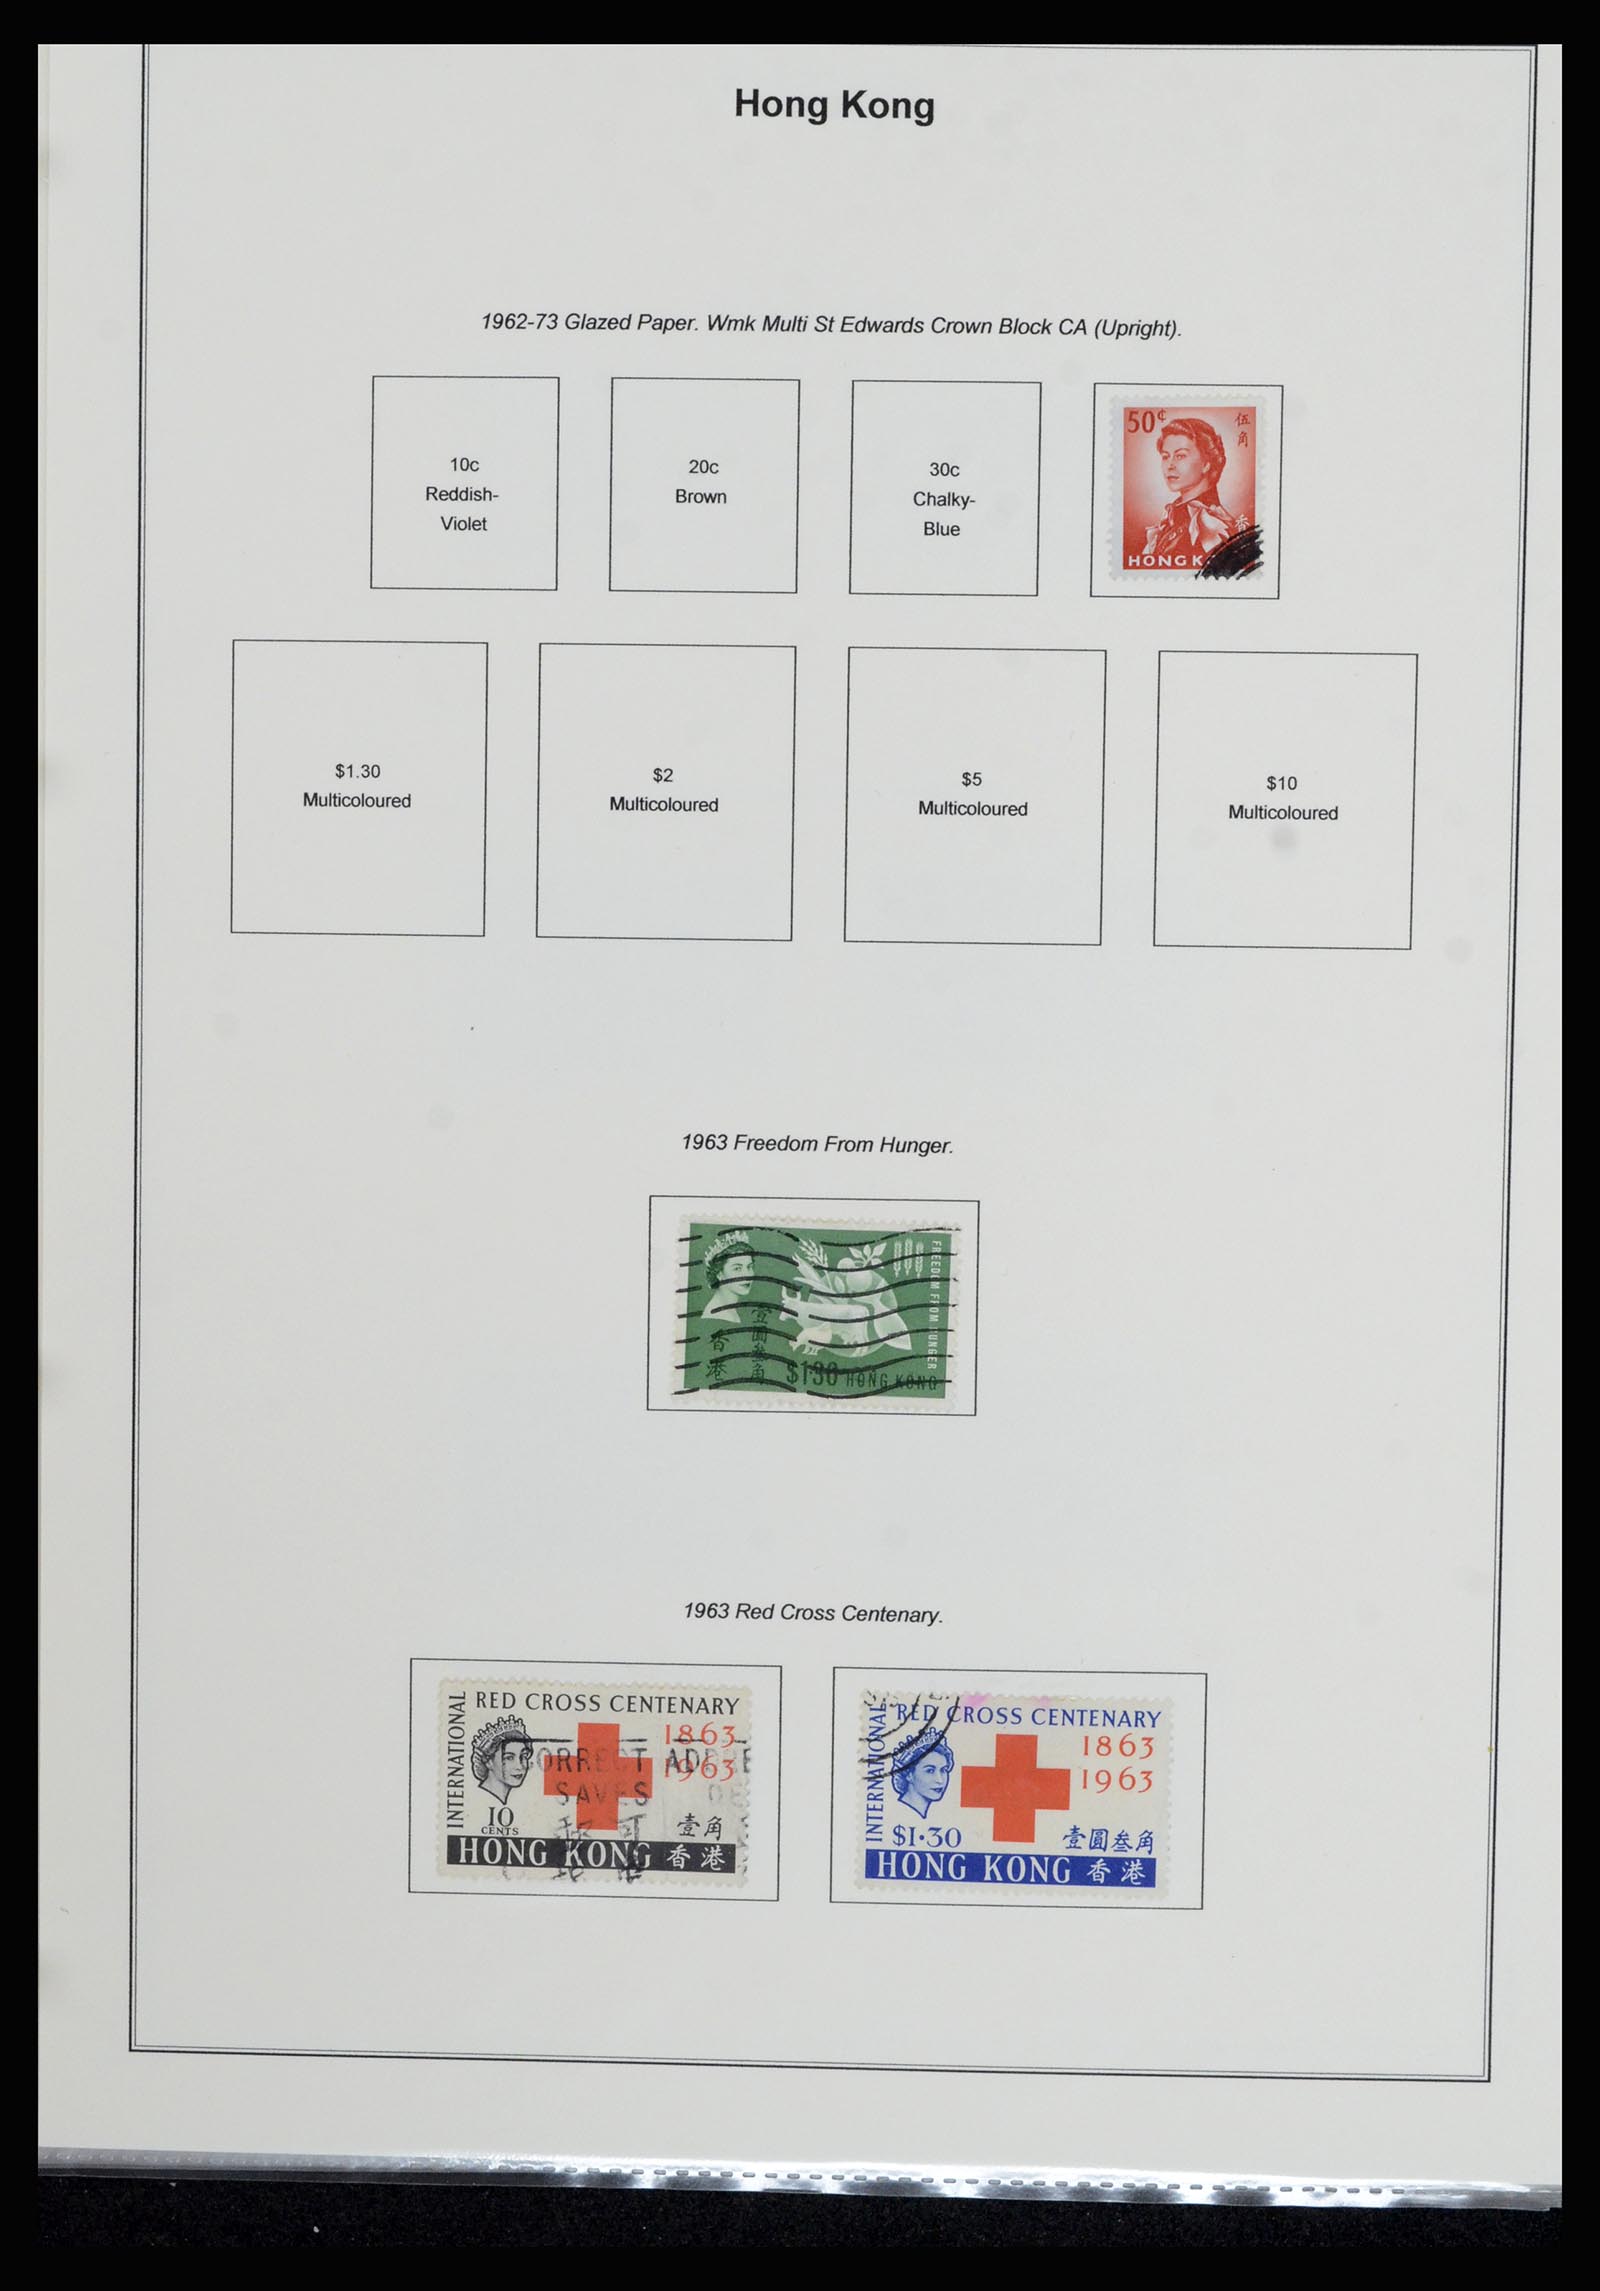 37079 022 - Stamp collection 37079 Hong Kong 1961-1984.